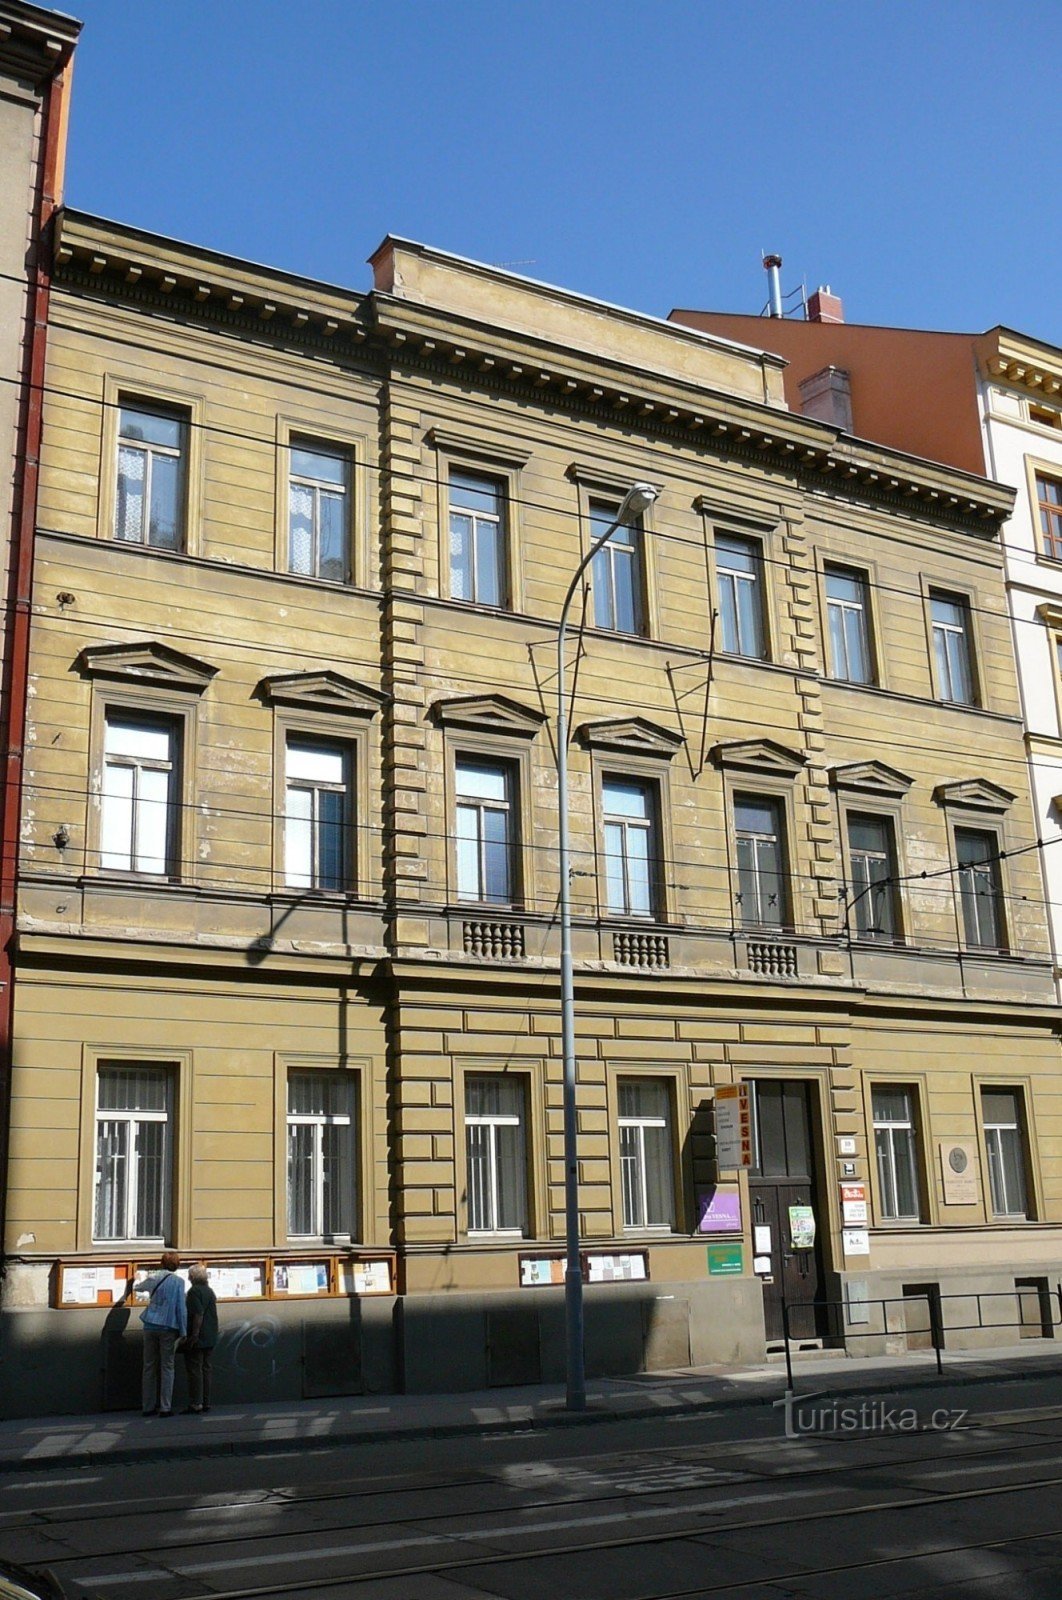 Dom przy Údolní 10, w którym do dziś rezyduje stowarzyszenie Vesna i pokój Jurkoviča można obejrzeć tutaj